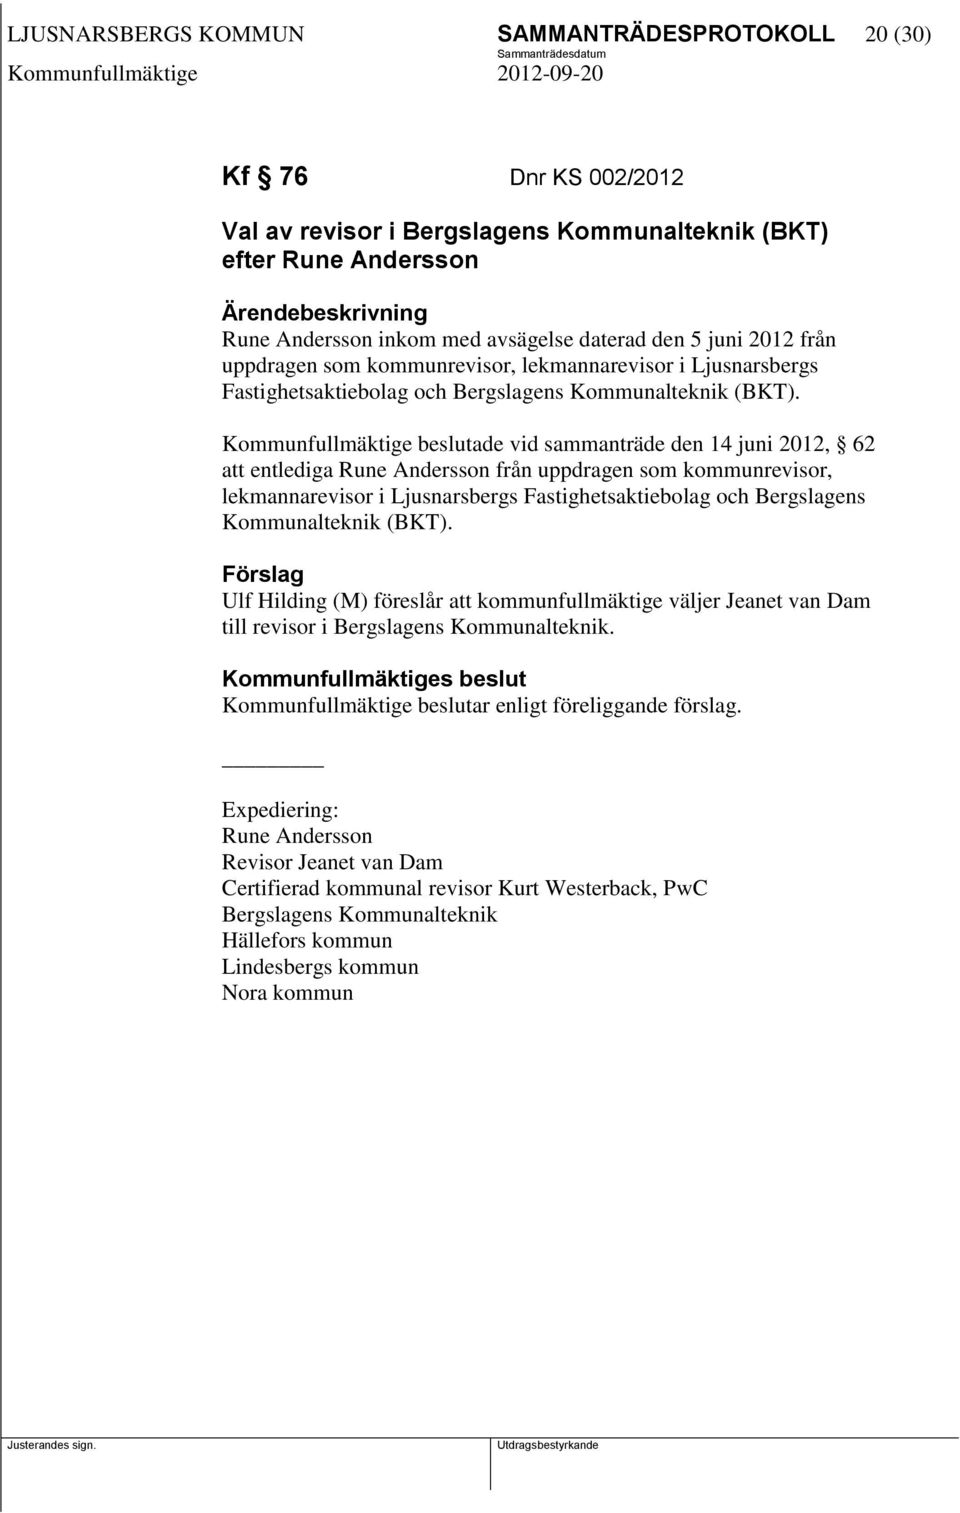 Kommunfullmäktige beslutade vid sammanträde den 14 juni 2012, 62 att entlediga Rune Andersson från uppdragen som kommunrevisor, lekmannarevisor i Ljusnarsbergs Fastighetsaktiebolag och Bergslagens